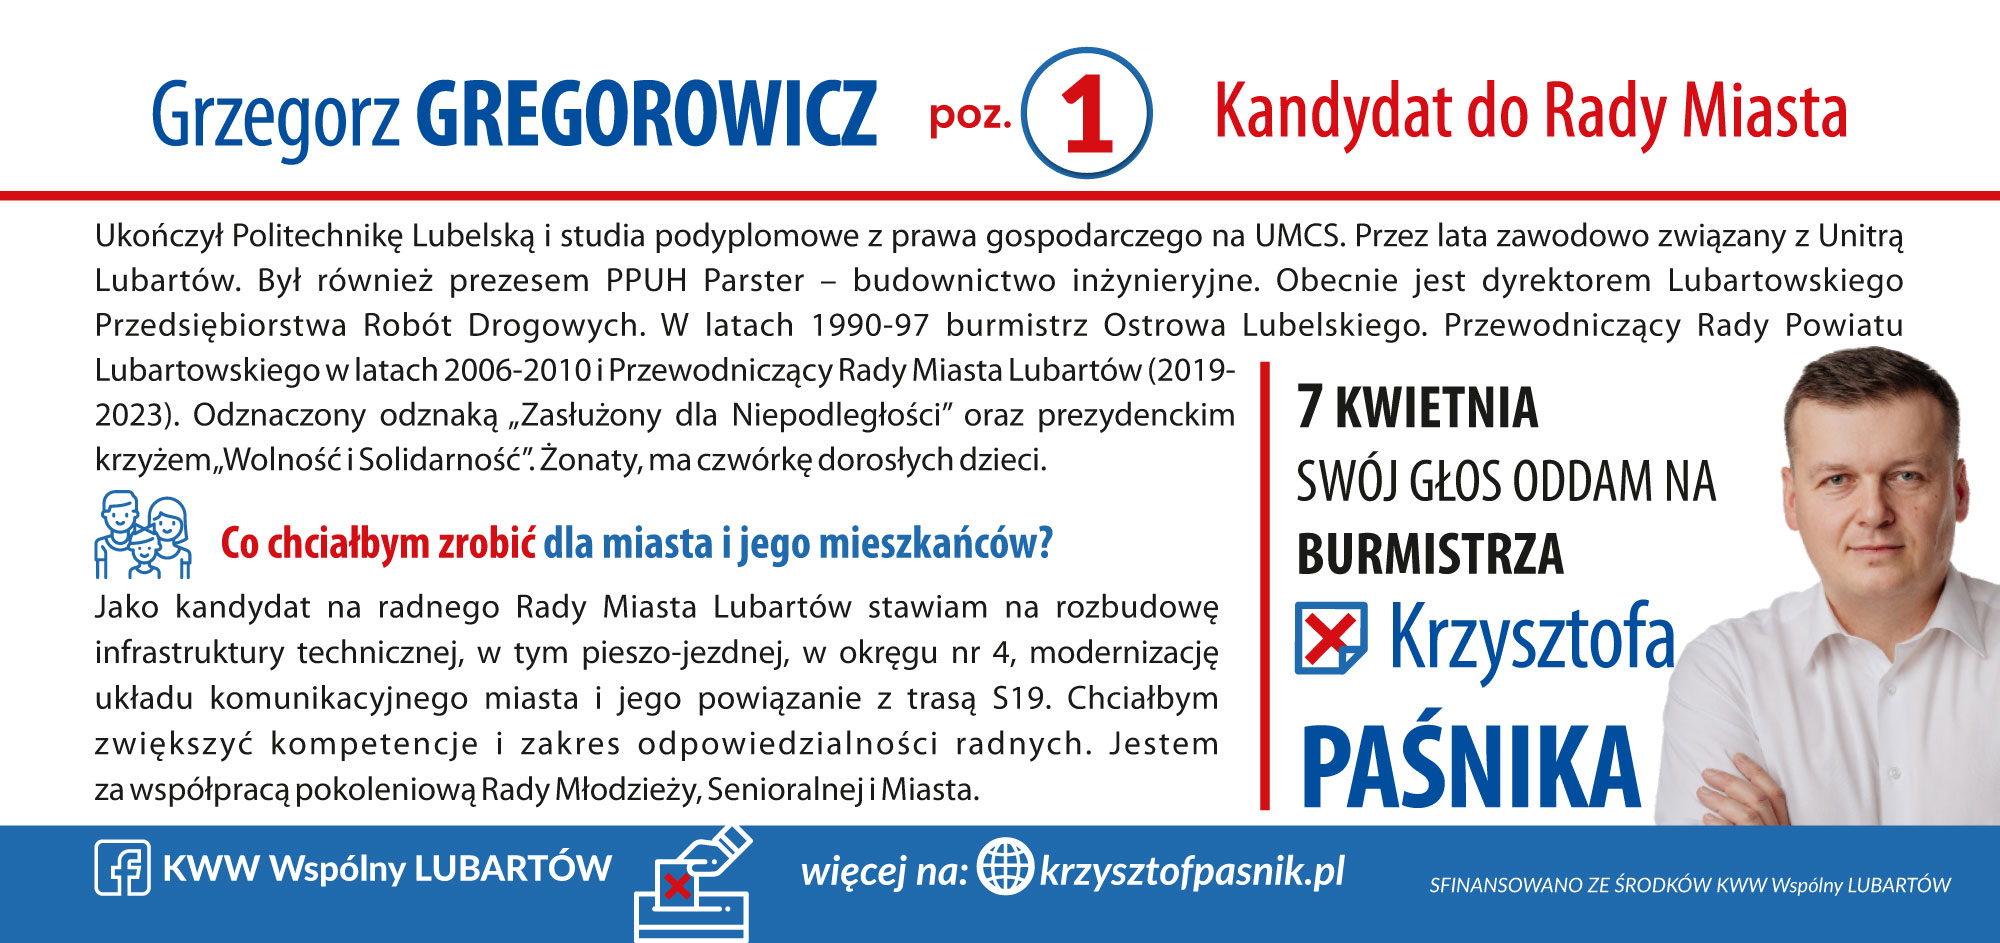 GREGOROWICZ_Grzegorz-2